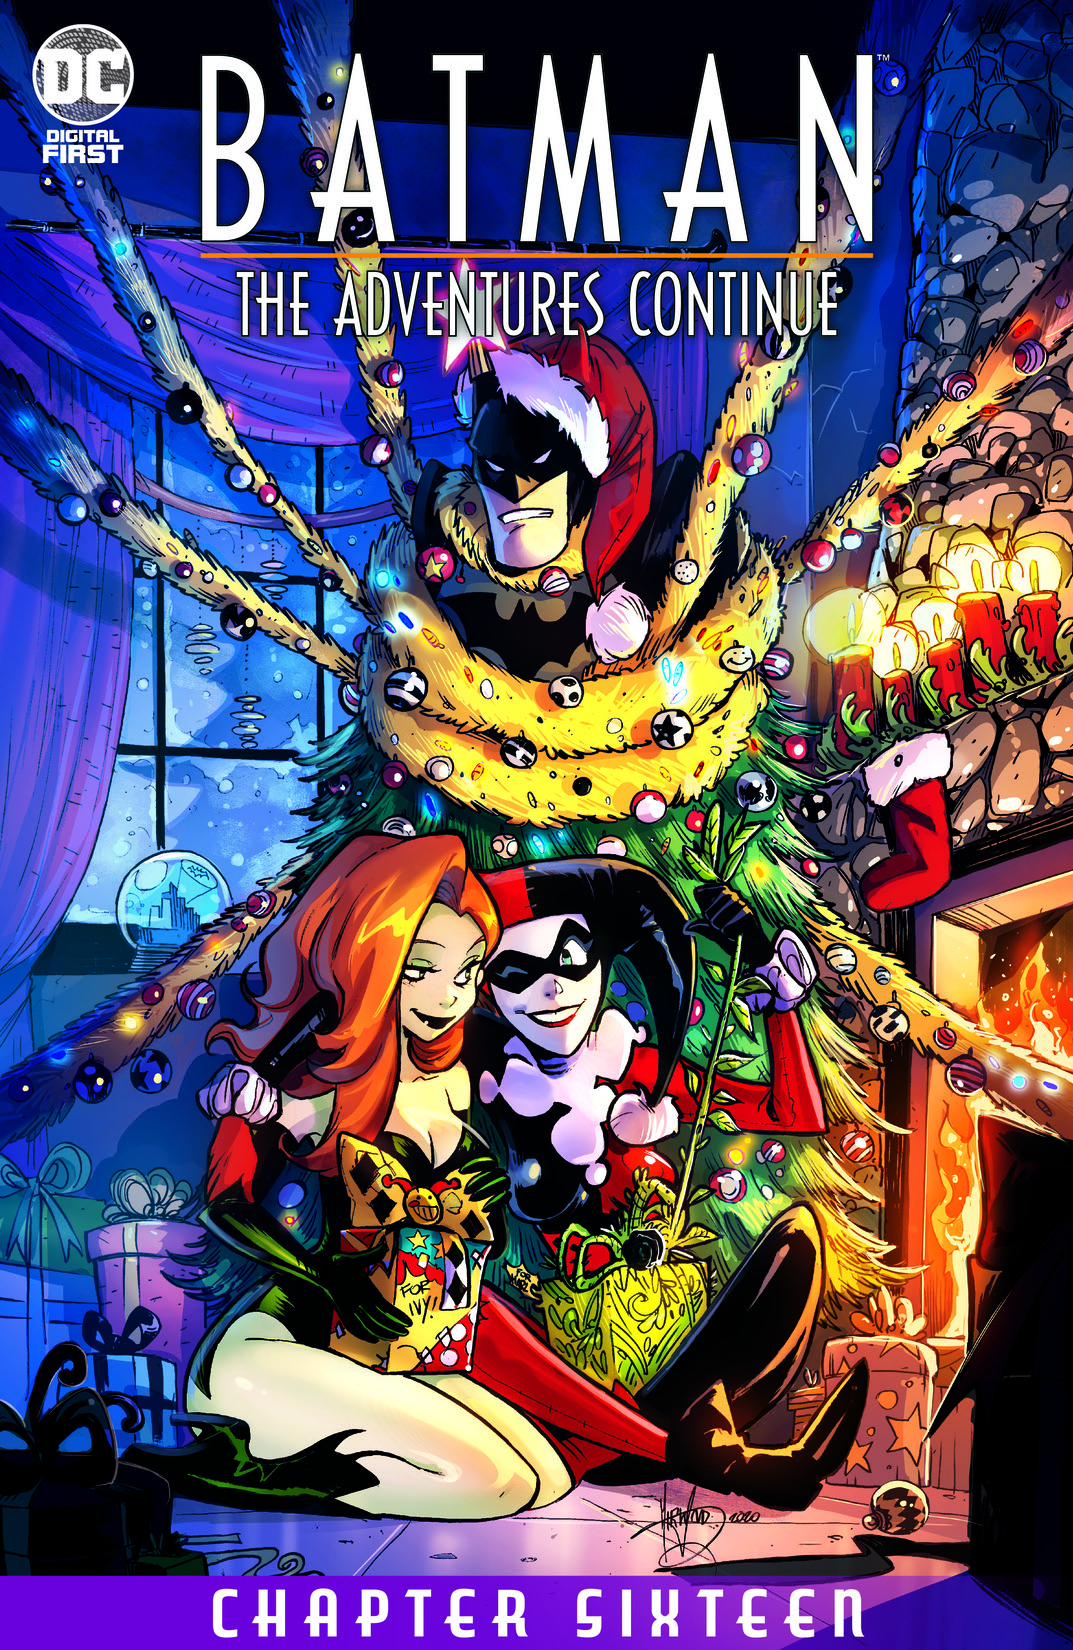 Batman: The Adventures Continue #16 preview images